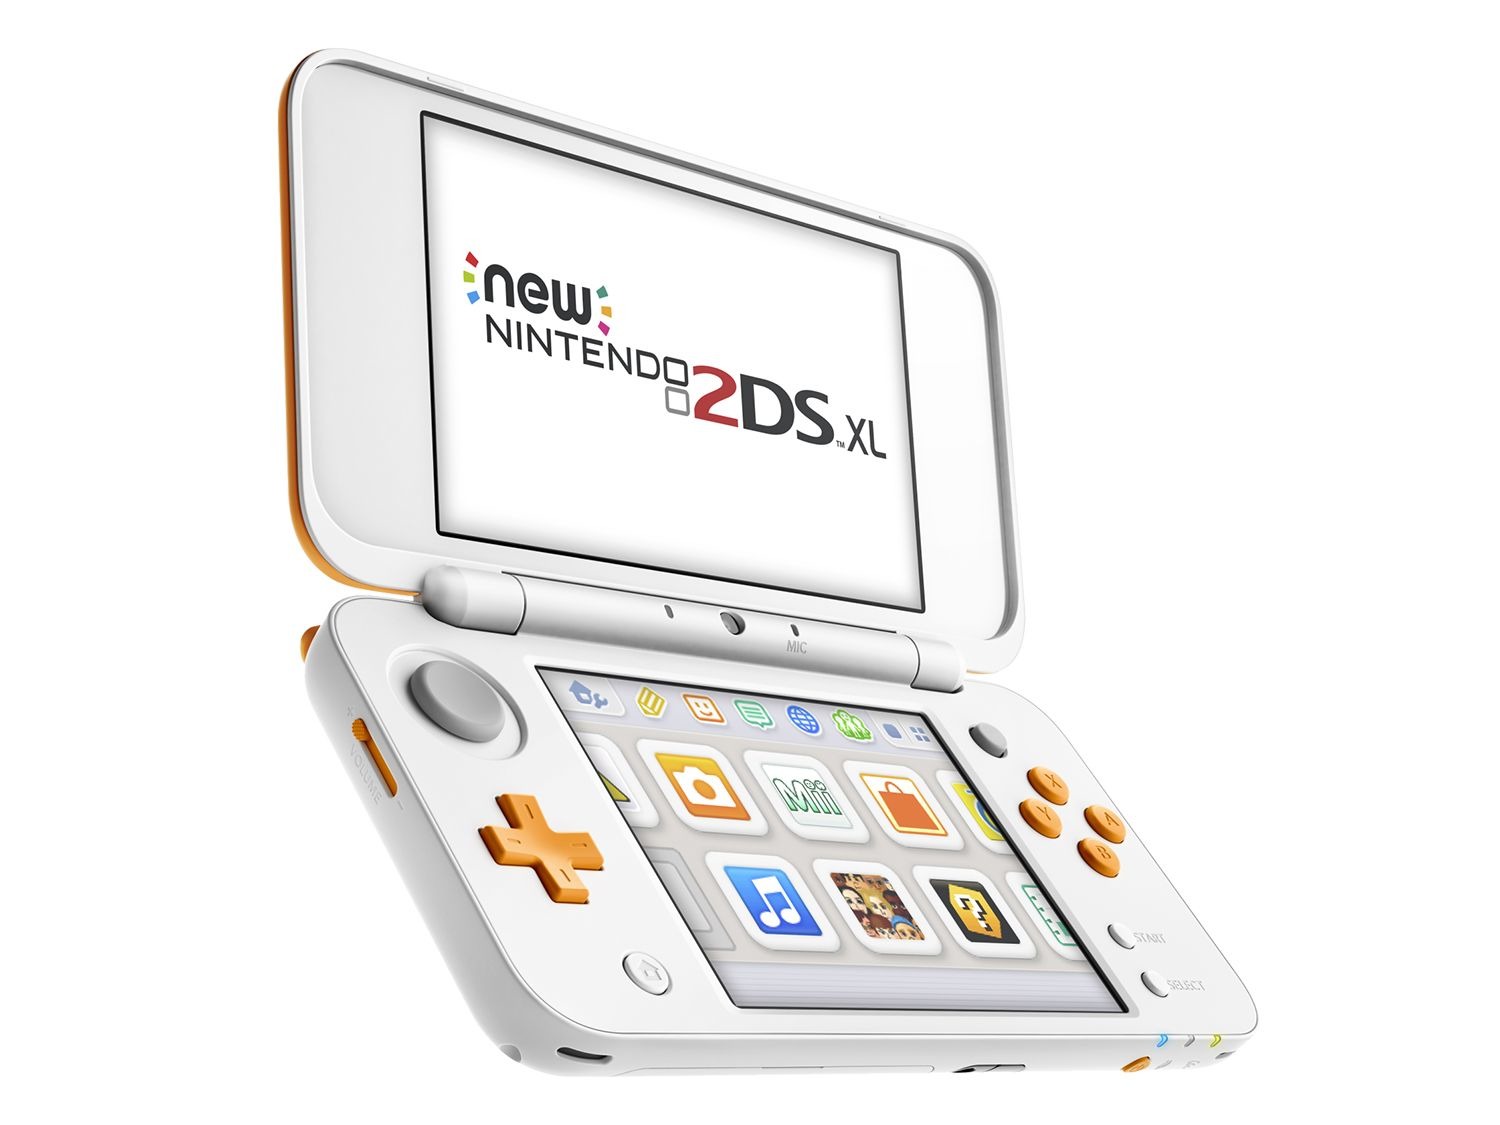 Nintendo 2ds XL. New Nintendo 2ds XL. Nintendo DS XL. Nintendo 2ds XL White. White nintendo